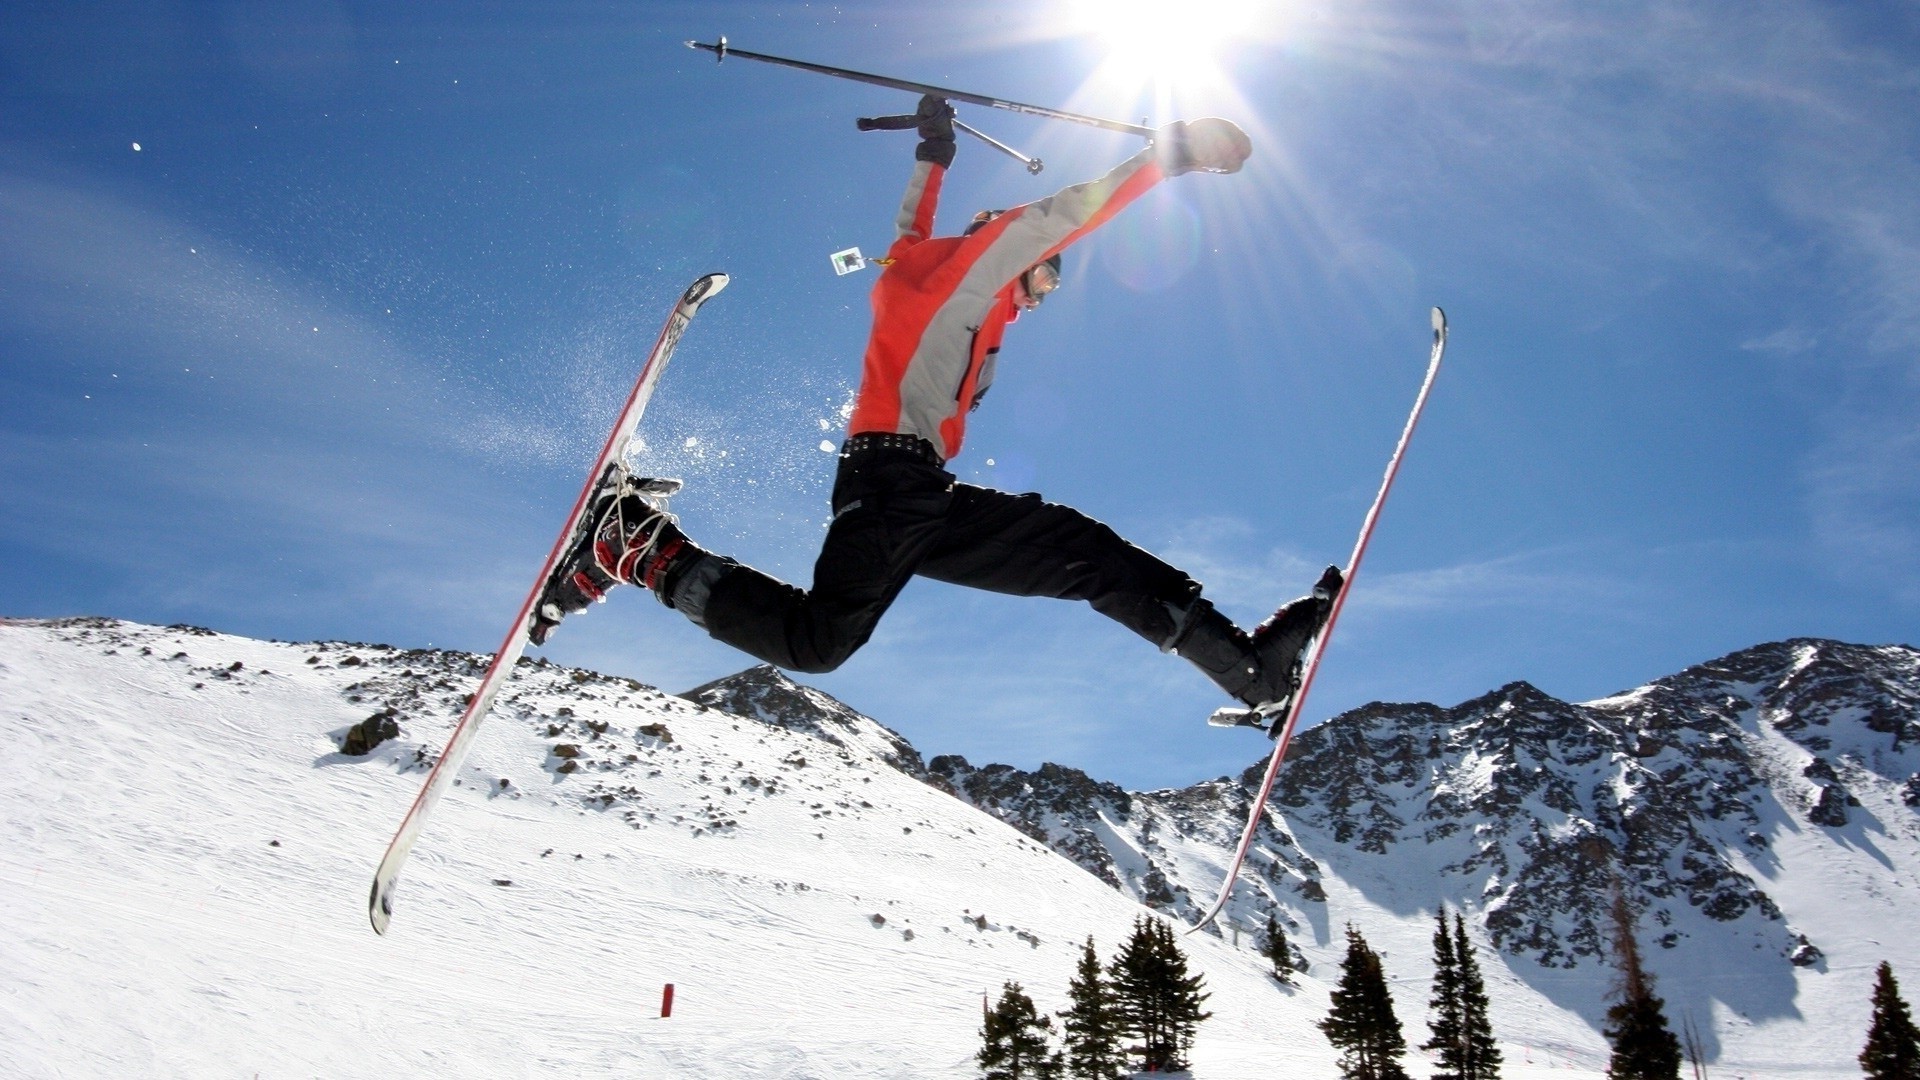 спорт снег лыжница зима спорт курорт отдых действие горы приключения горнолыжный курорт холодная сноуборд возбуждение аджилити альпийская удовольствие горнолыжный склон